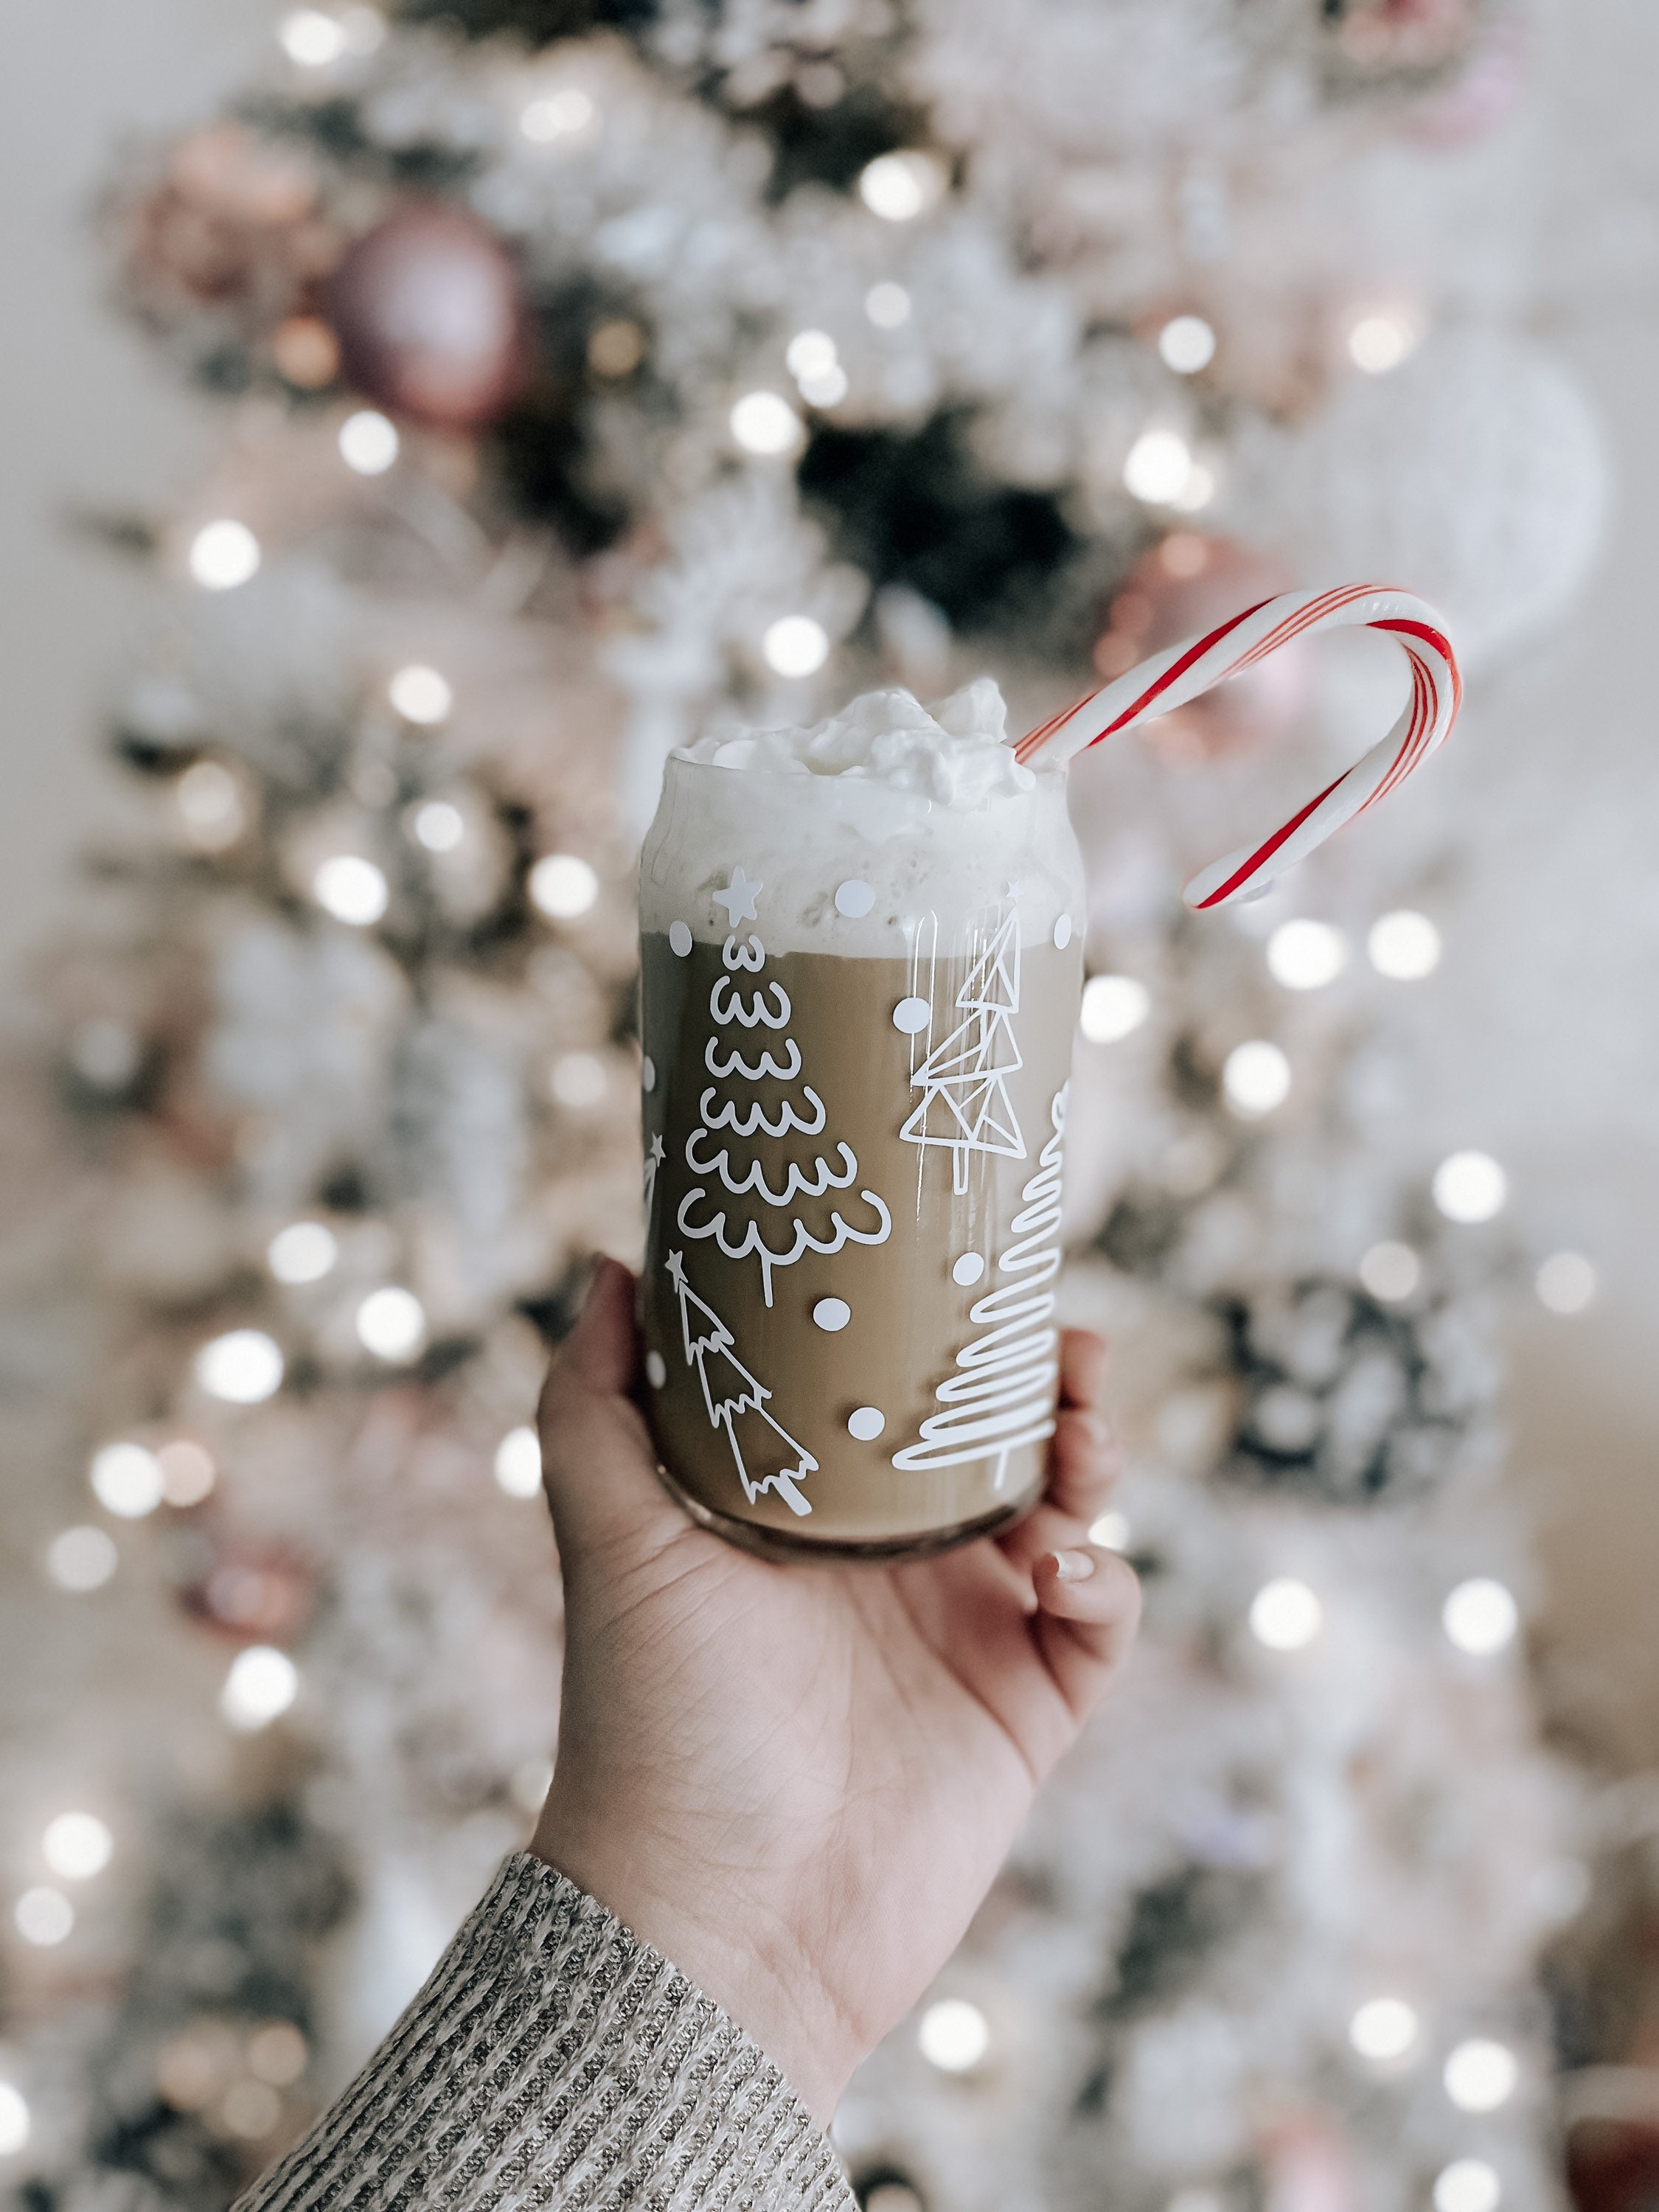 Joyseller Christmas Gifts, Christmas Iced Coffee Can Glass, 16oz Christmas  Glass Cup with Lid and Straw, Xmas Tumbler Beer Can Glass, Christmas